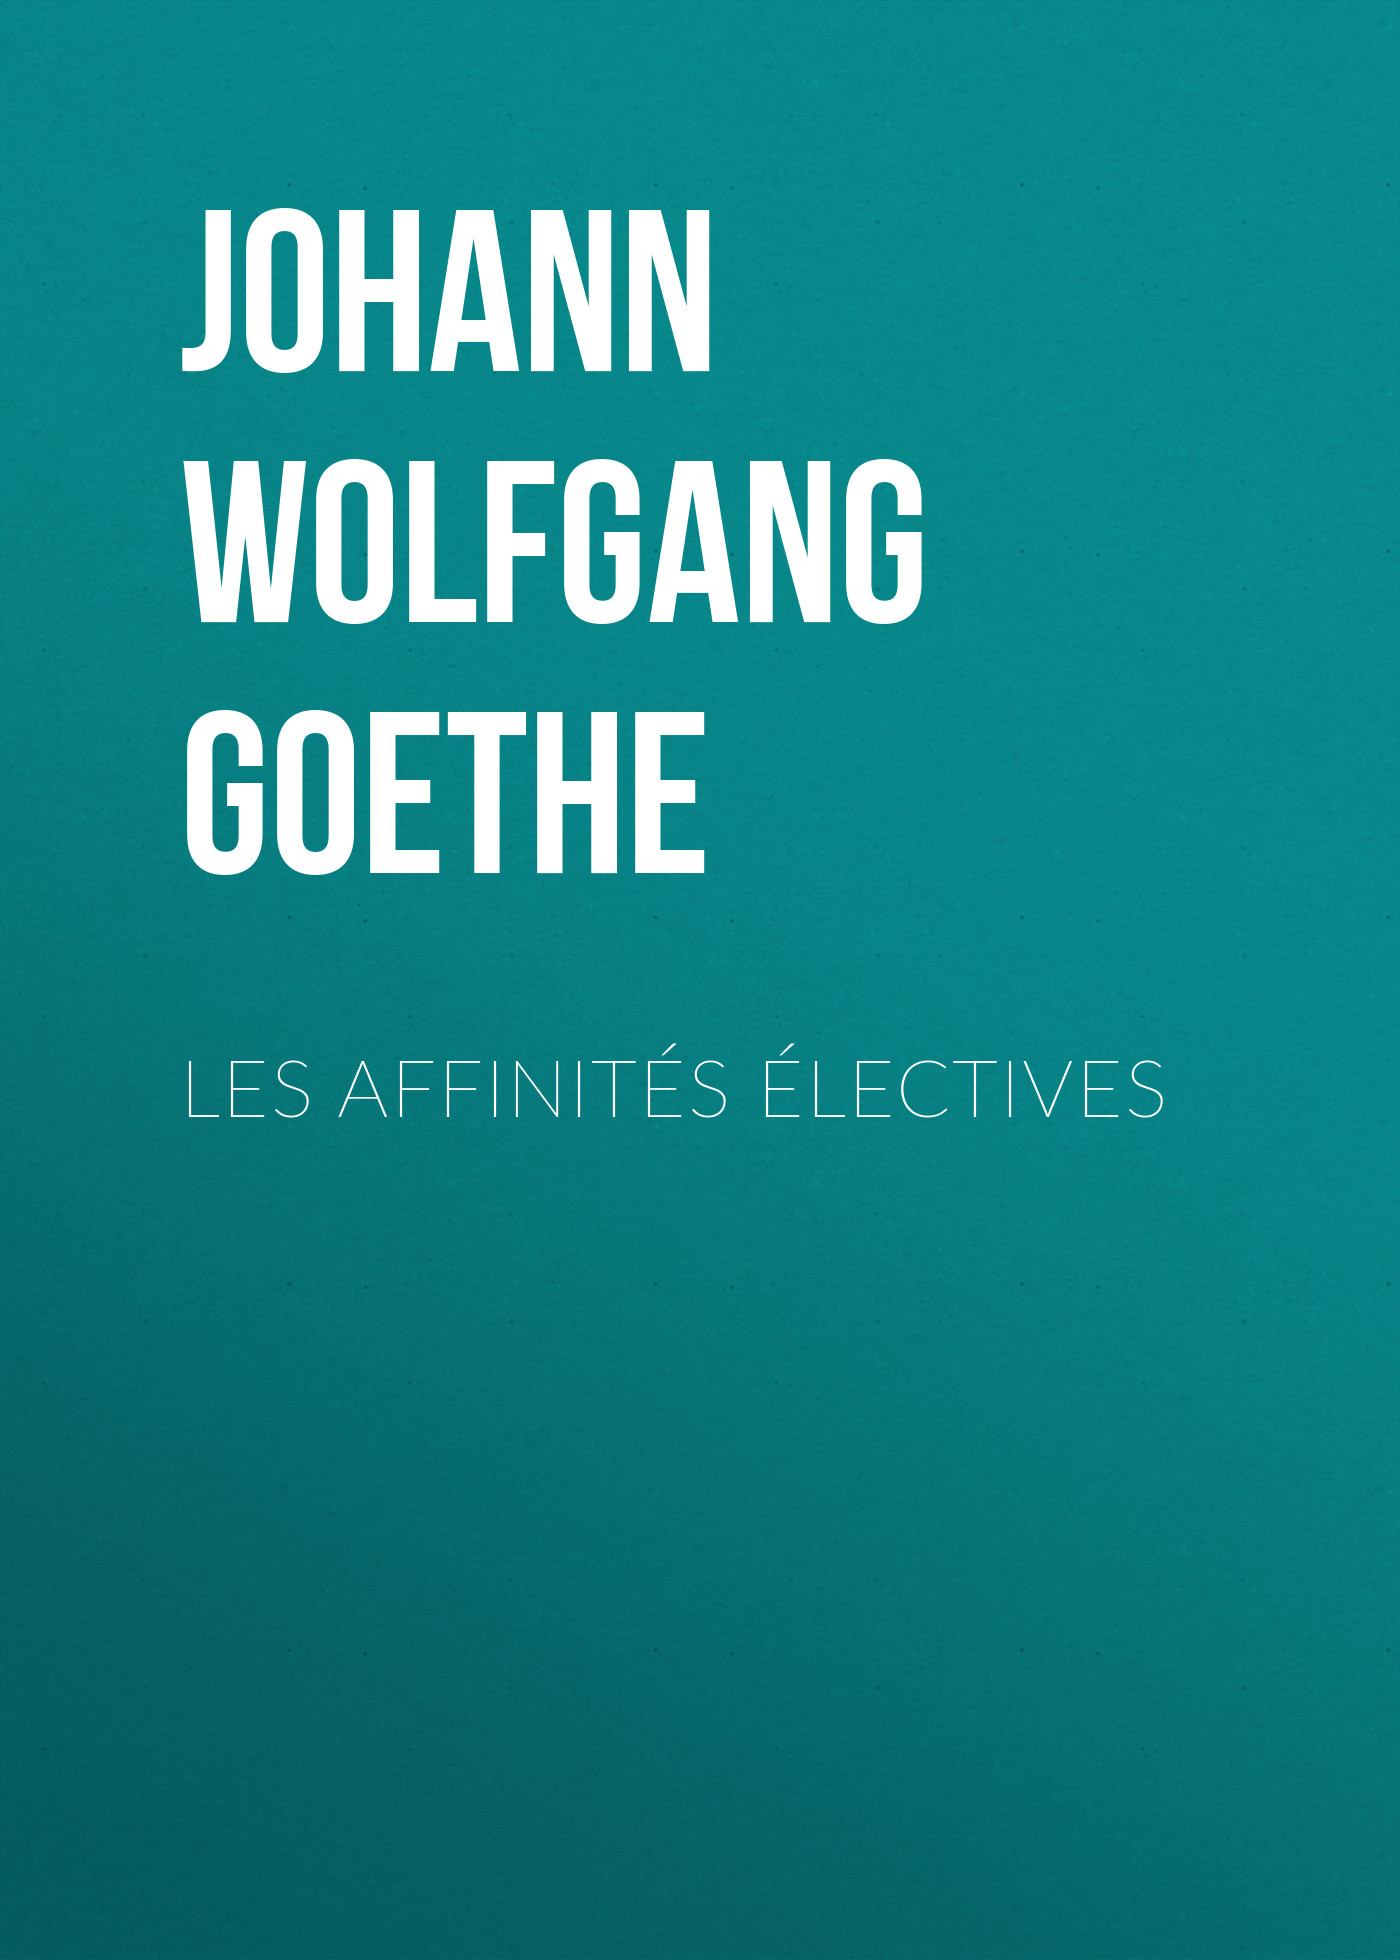 Книга Les affinités électives из серии , созданная Johann von Goethe, может относится к жанру Зарубежная старинная литература, Зарубежная классика. Стоимость электронной книги Les affinités électives с идентификатором 25203543 составляет 0 руб.